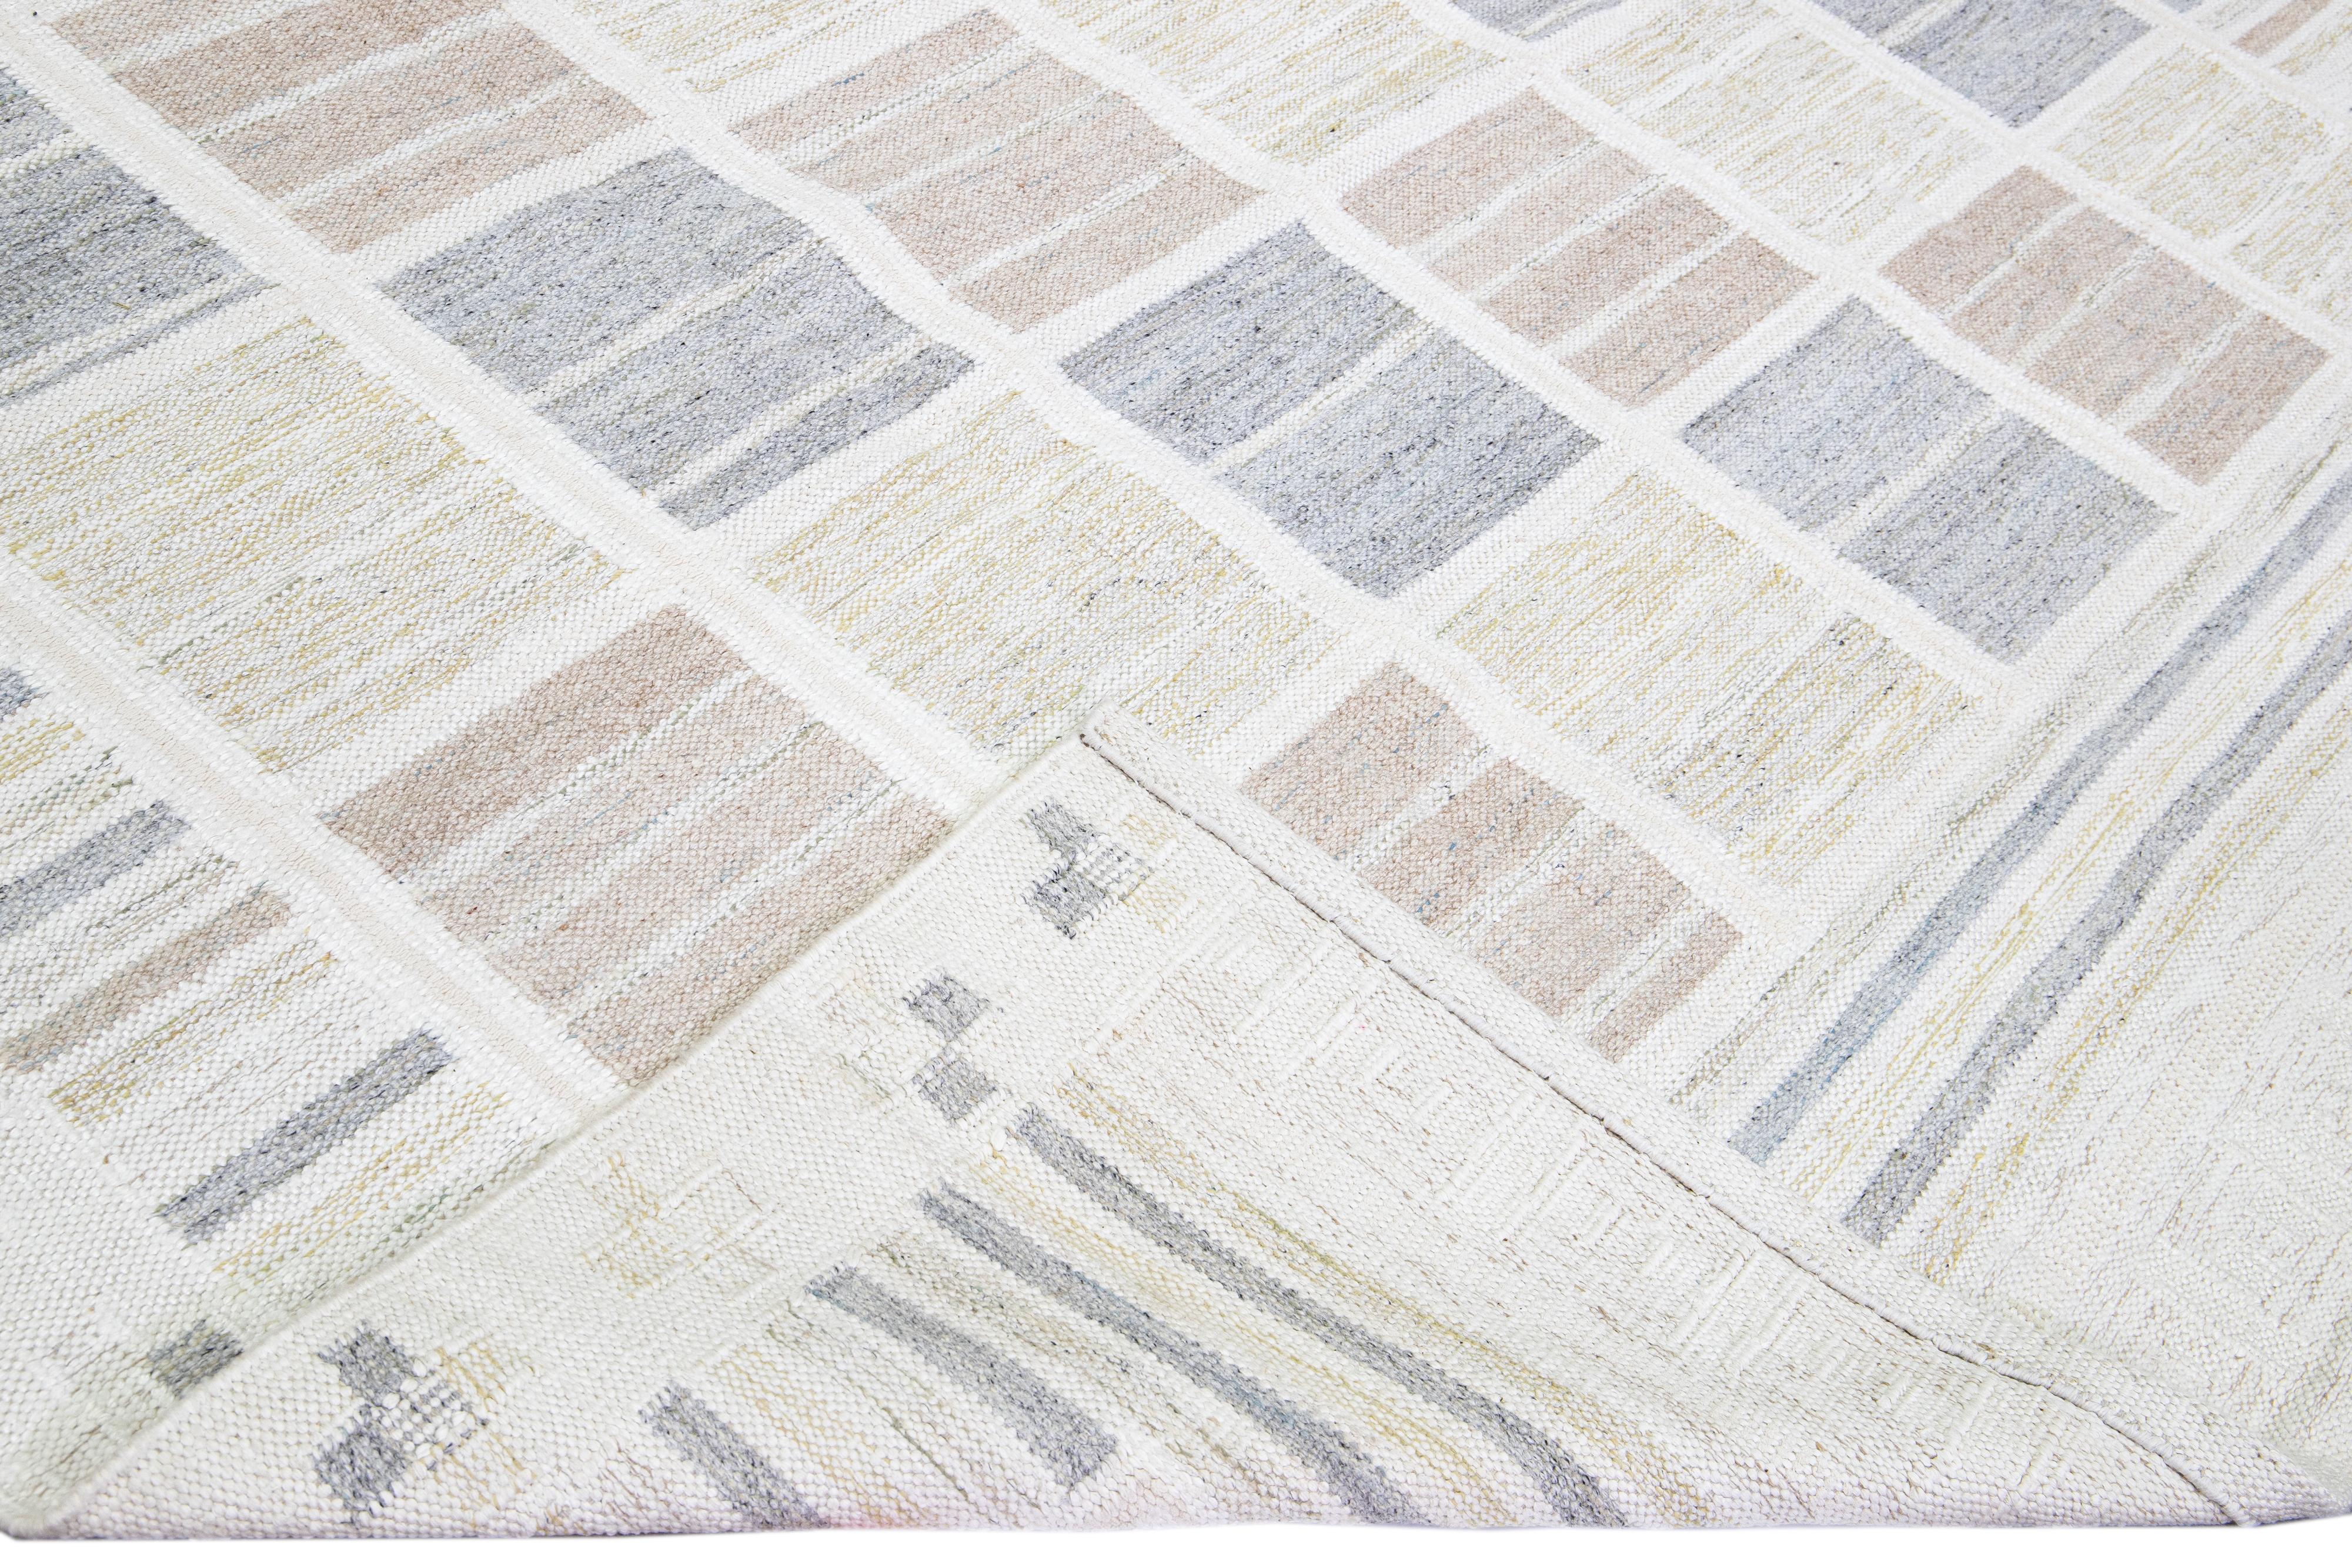 Magnifique tapis en laine de style scandinave avec un champ beige. Ce tapis moderne présente des accents de bleu, de jaune et de beige crème dans un magnifique motif géométrique.

 Ce tapis mesure : 9'11